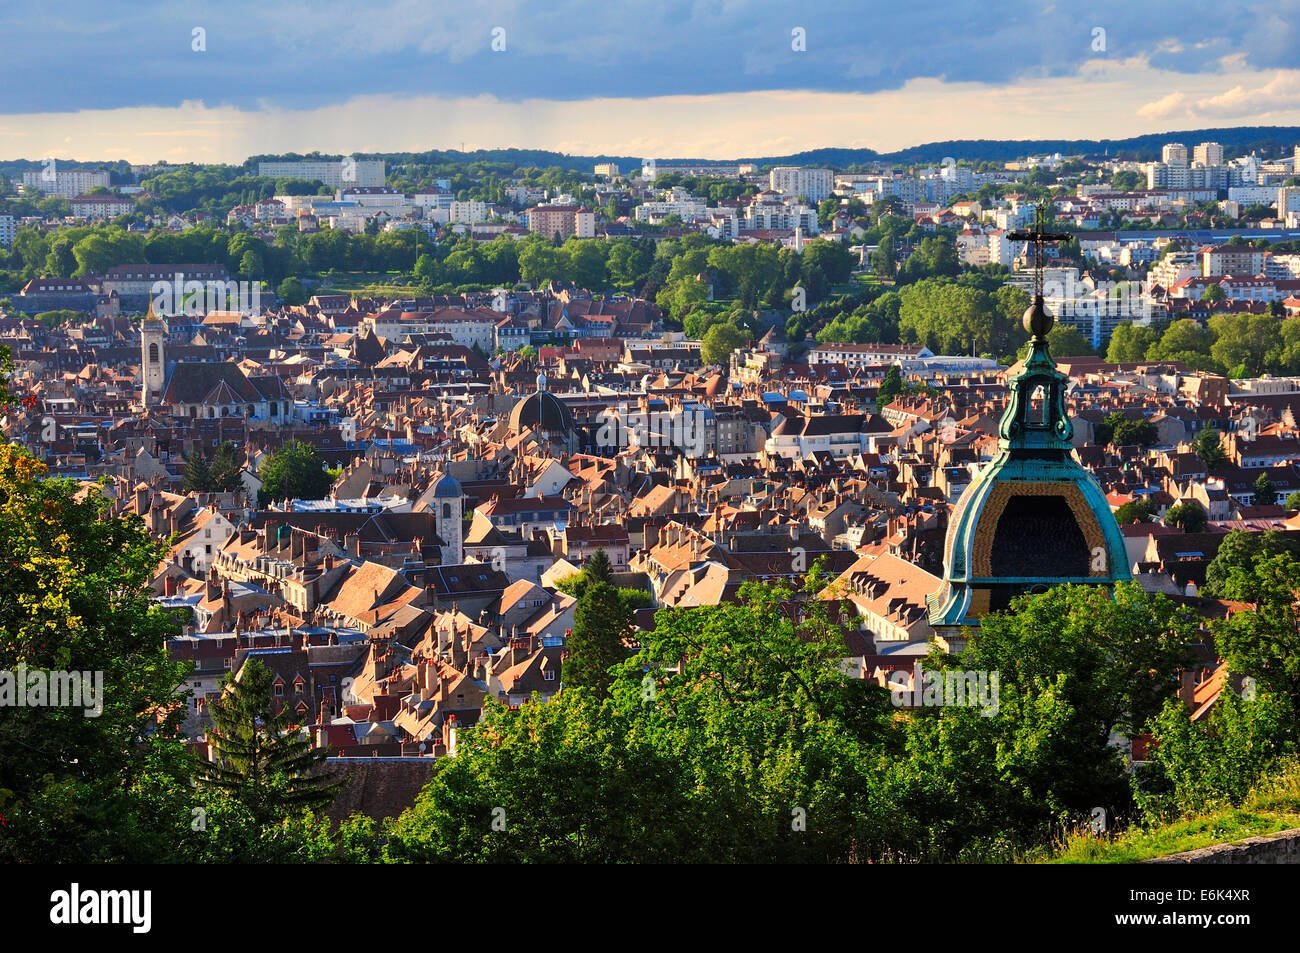 Cityscape of Besançon with Besançon Cathedral, Besançon, Département Doubs, Franche-Comté, France Stock Photo